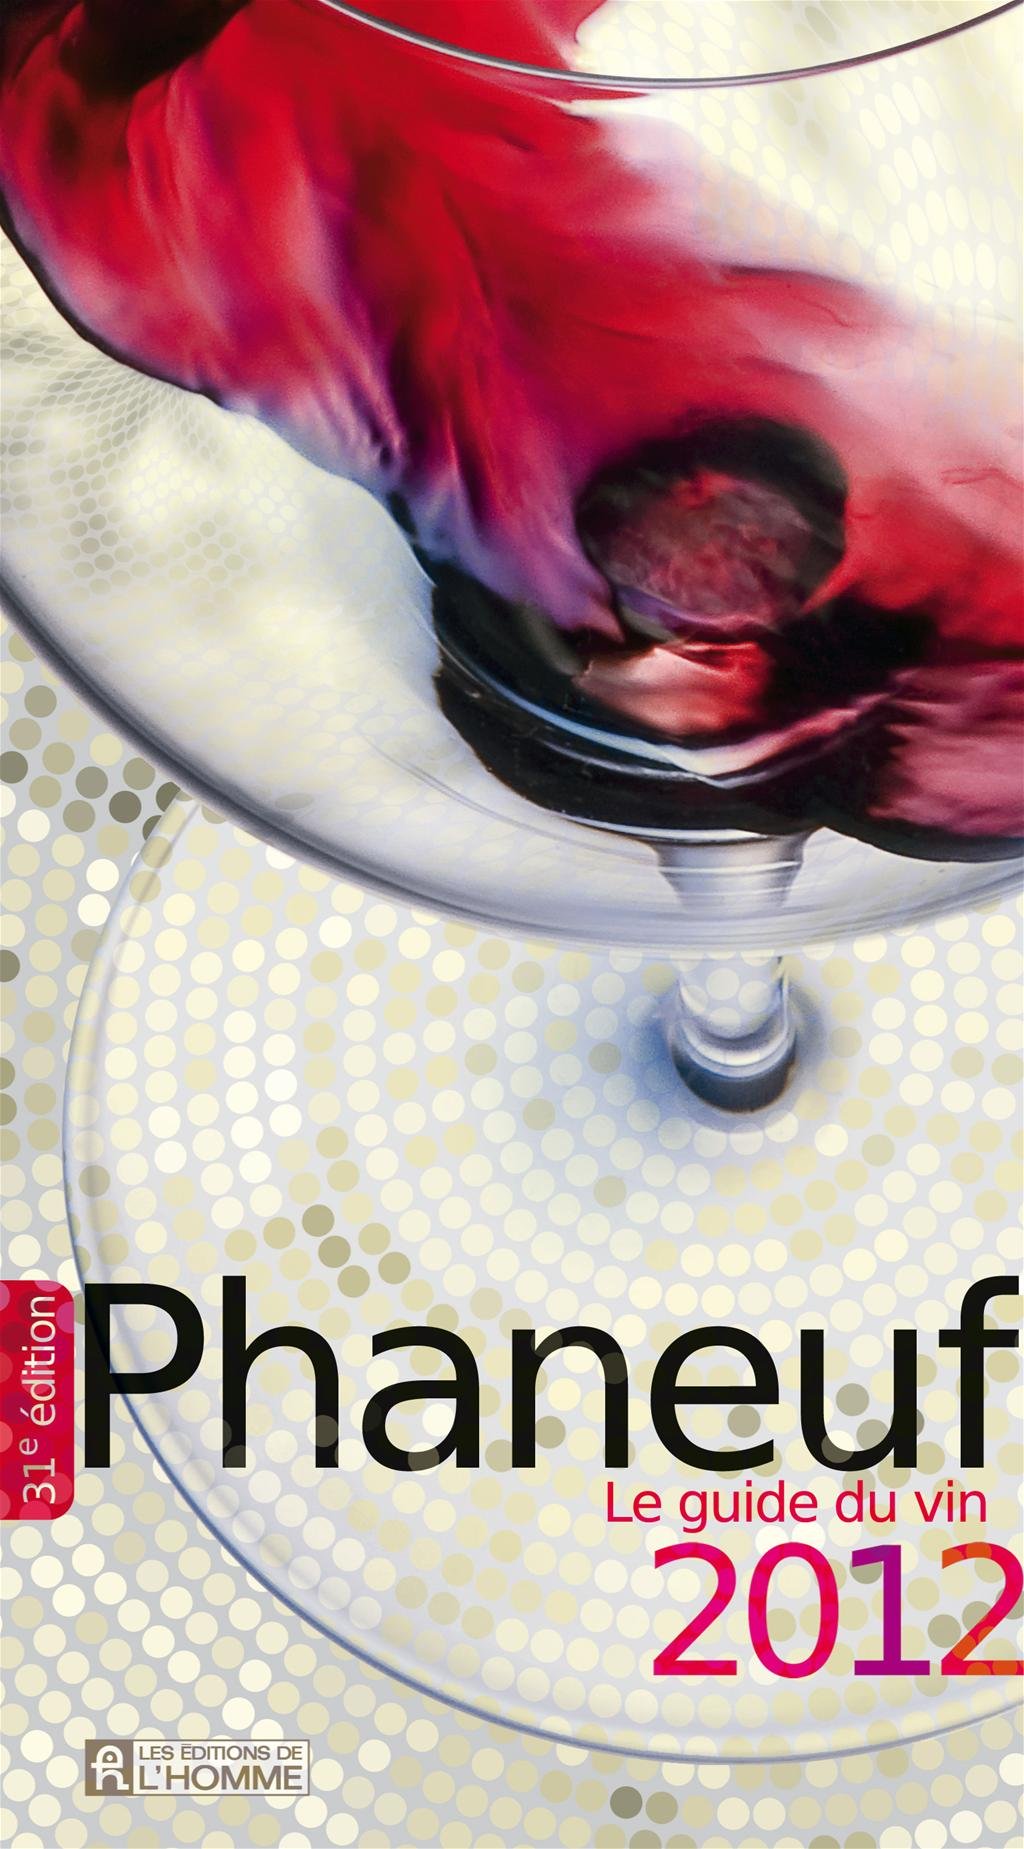 Livre ISBN 2761931815 Le guide du vin Phaneuf : Le guide du vin Phaneuf 2012 (Michel Phaneuf)